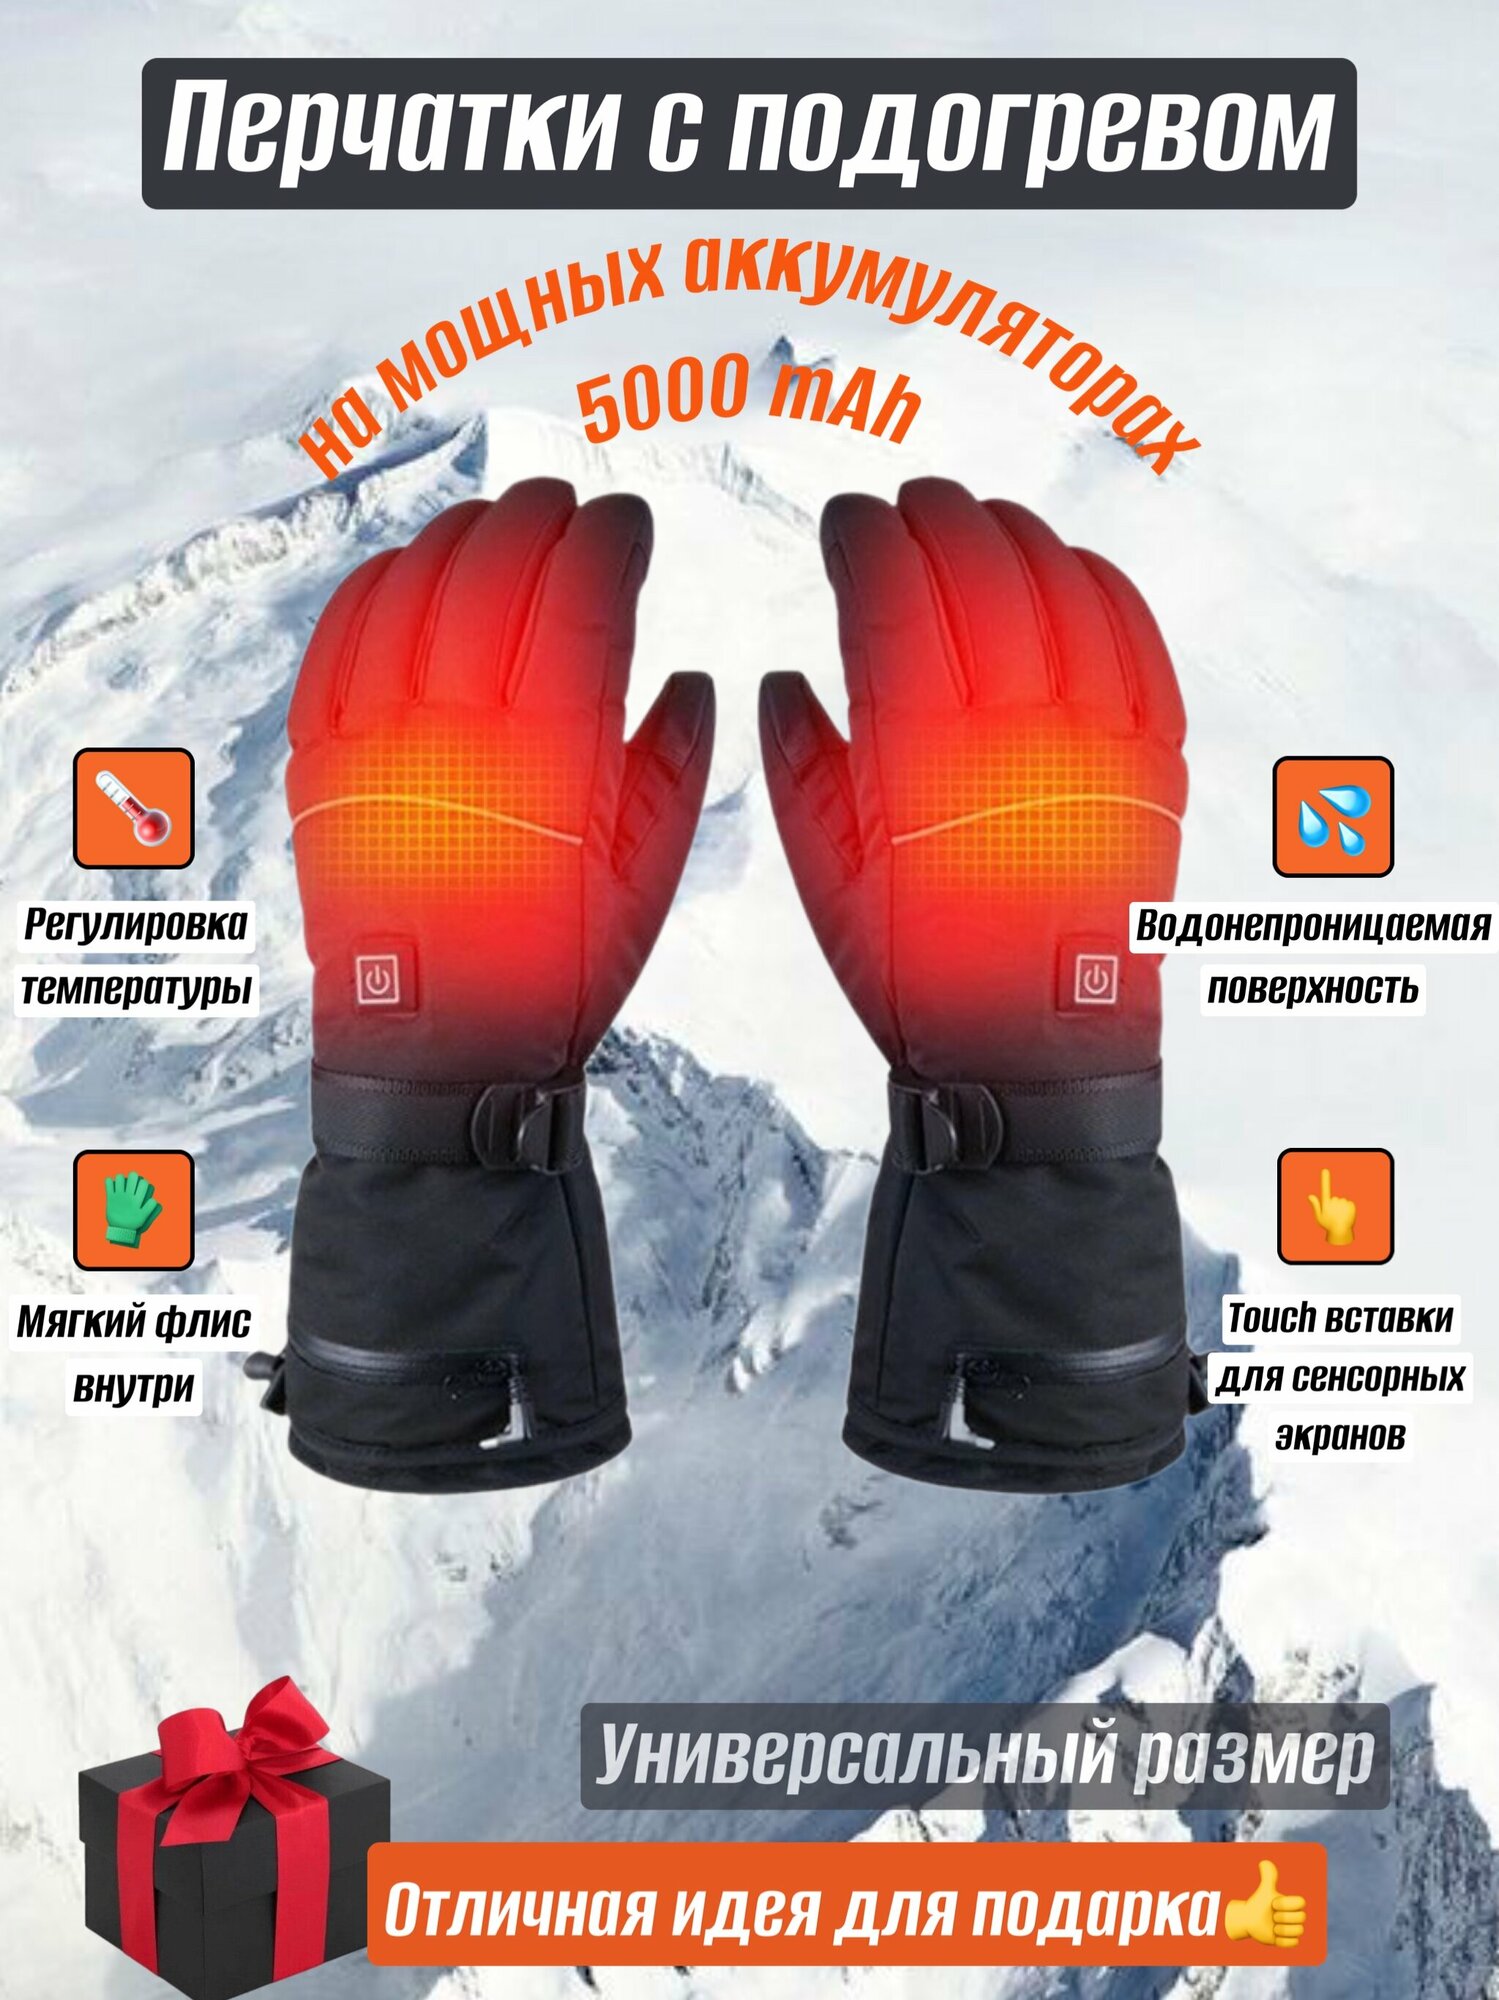 Перчатки с подогревом сенсорные с аккумулятором для зимних видов спорта и отдыха на природе.